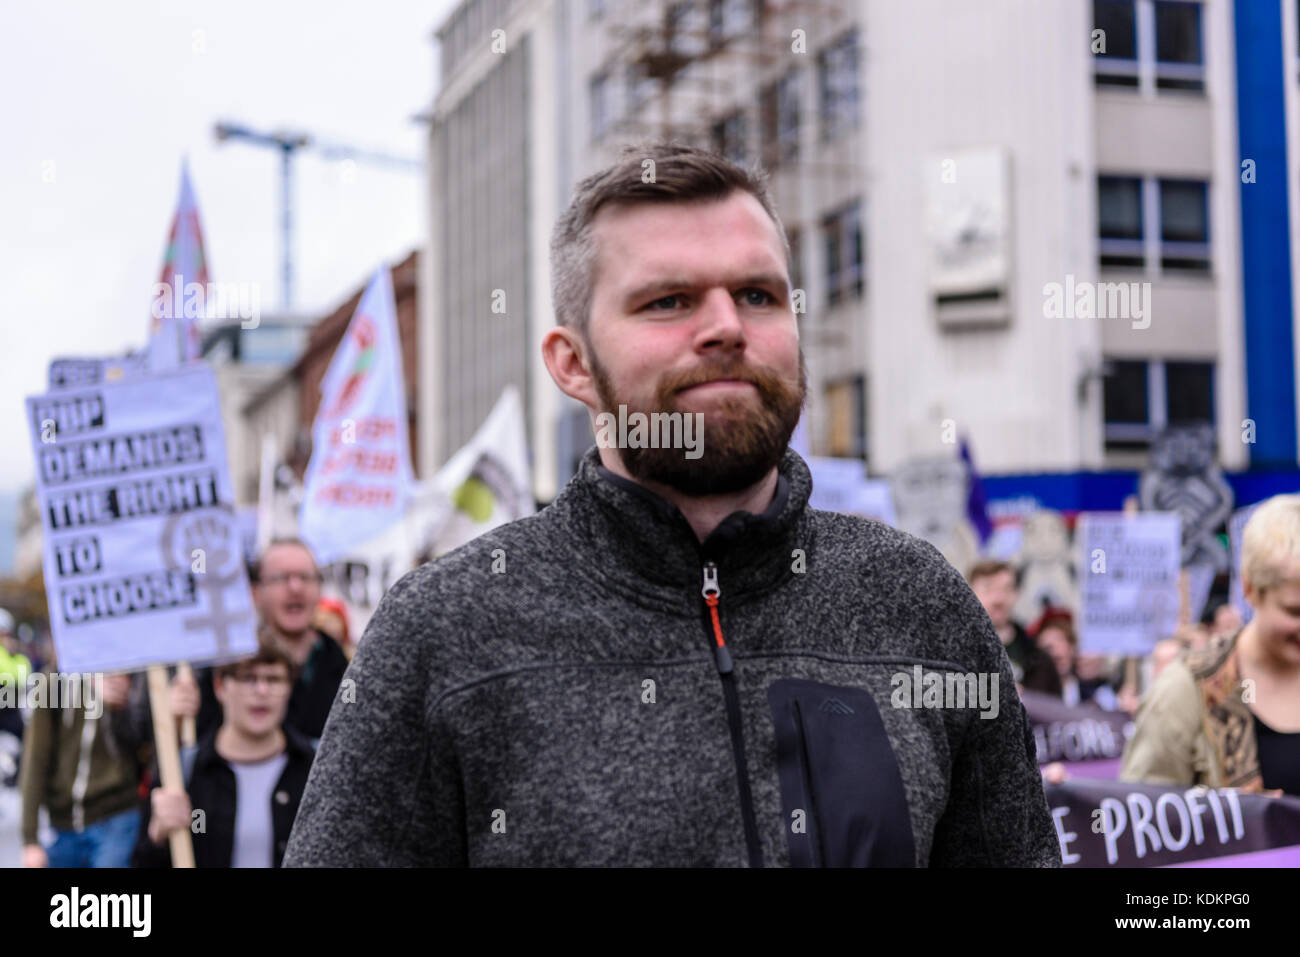 Belfast, Nordirland. 14/10/2017 - Gerry Carroll von der irischen politischen Gruppe Menschen vor Profit auf der Kundgebung für die Wahl halten eine Parade zur Unterstützung der pro-reproduktive Wahl Recht auf Abtreibung und die Rechte der Frauen. Rund 1200 Menschen nahmen an der Veranstaltung teil. Stockfoto